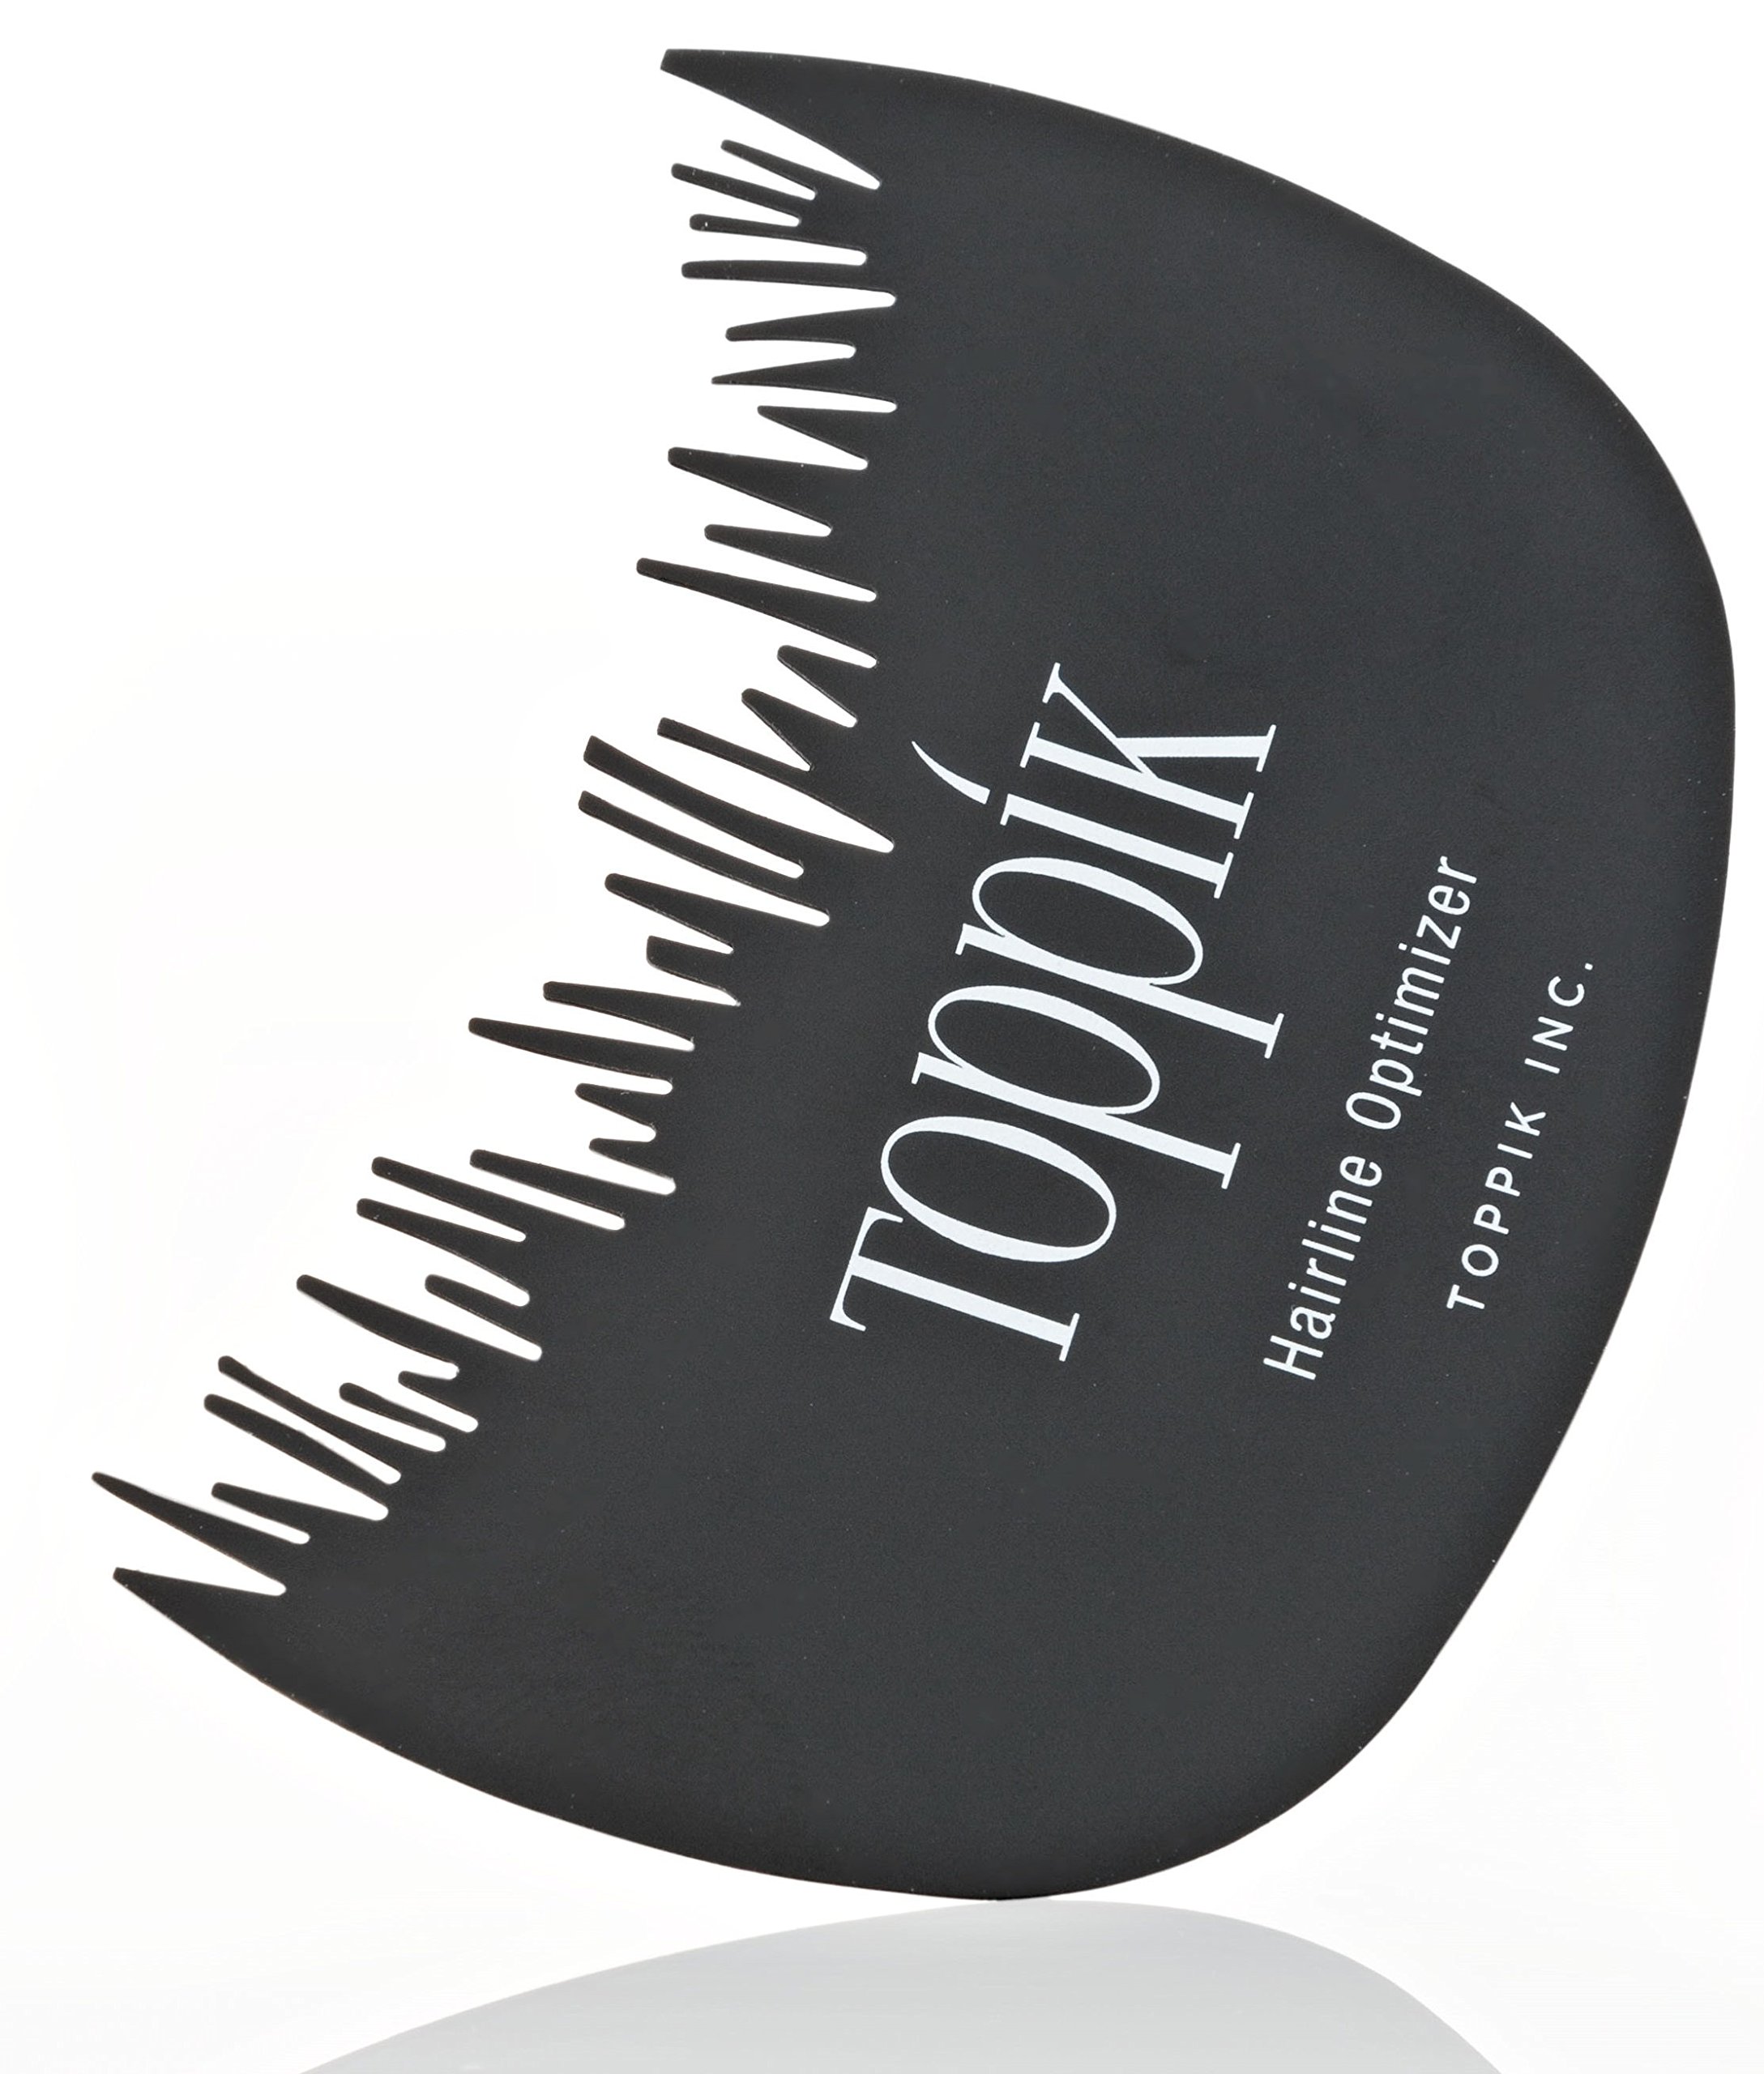 Mua Toppik Hair Perfecting Toolkit trên Amazon Mỹ chính hãng 2023 | Fado